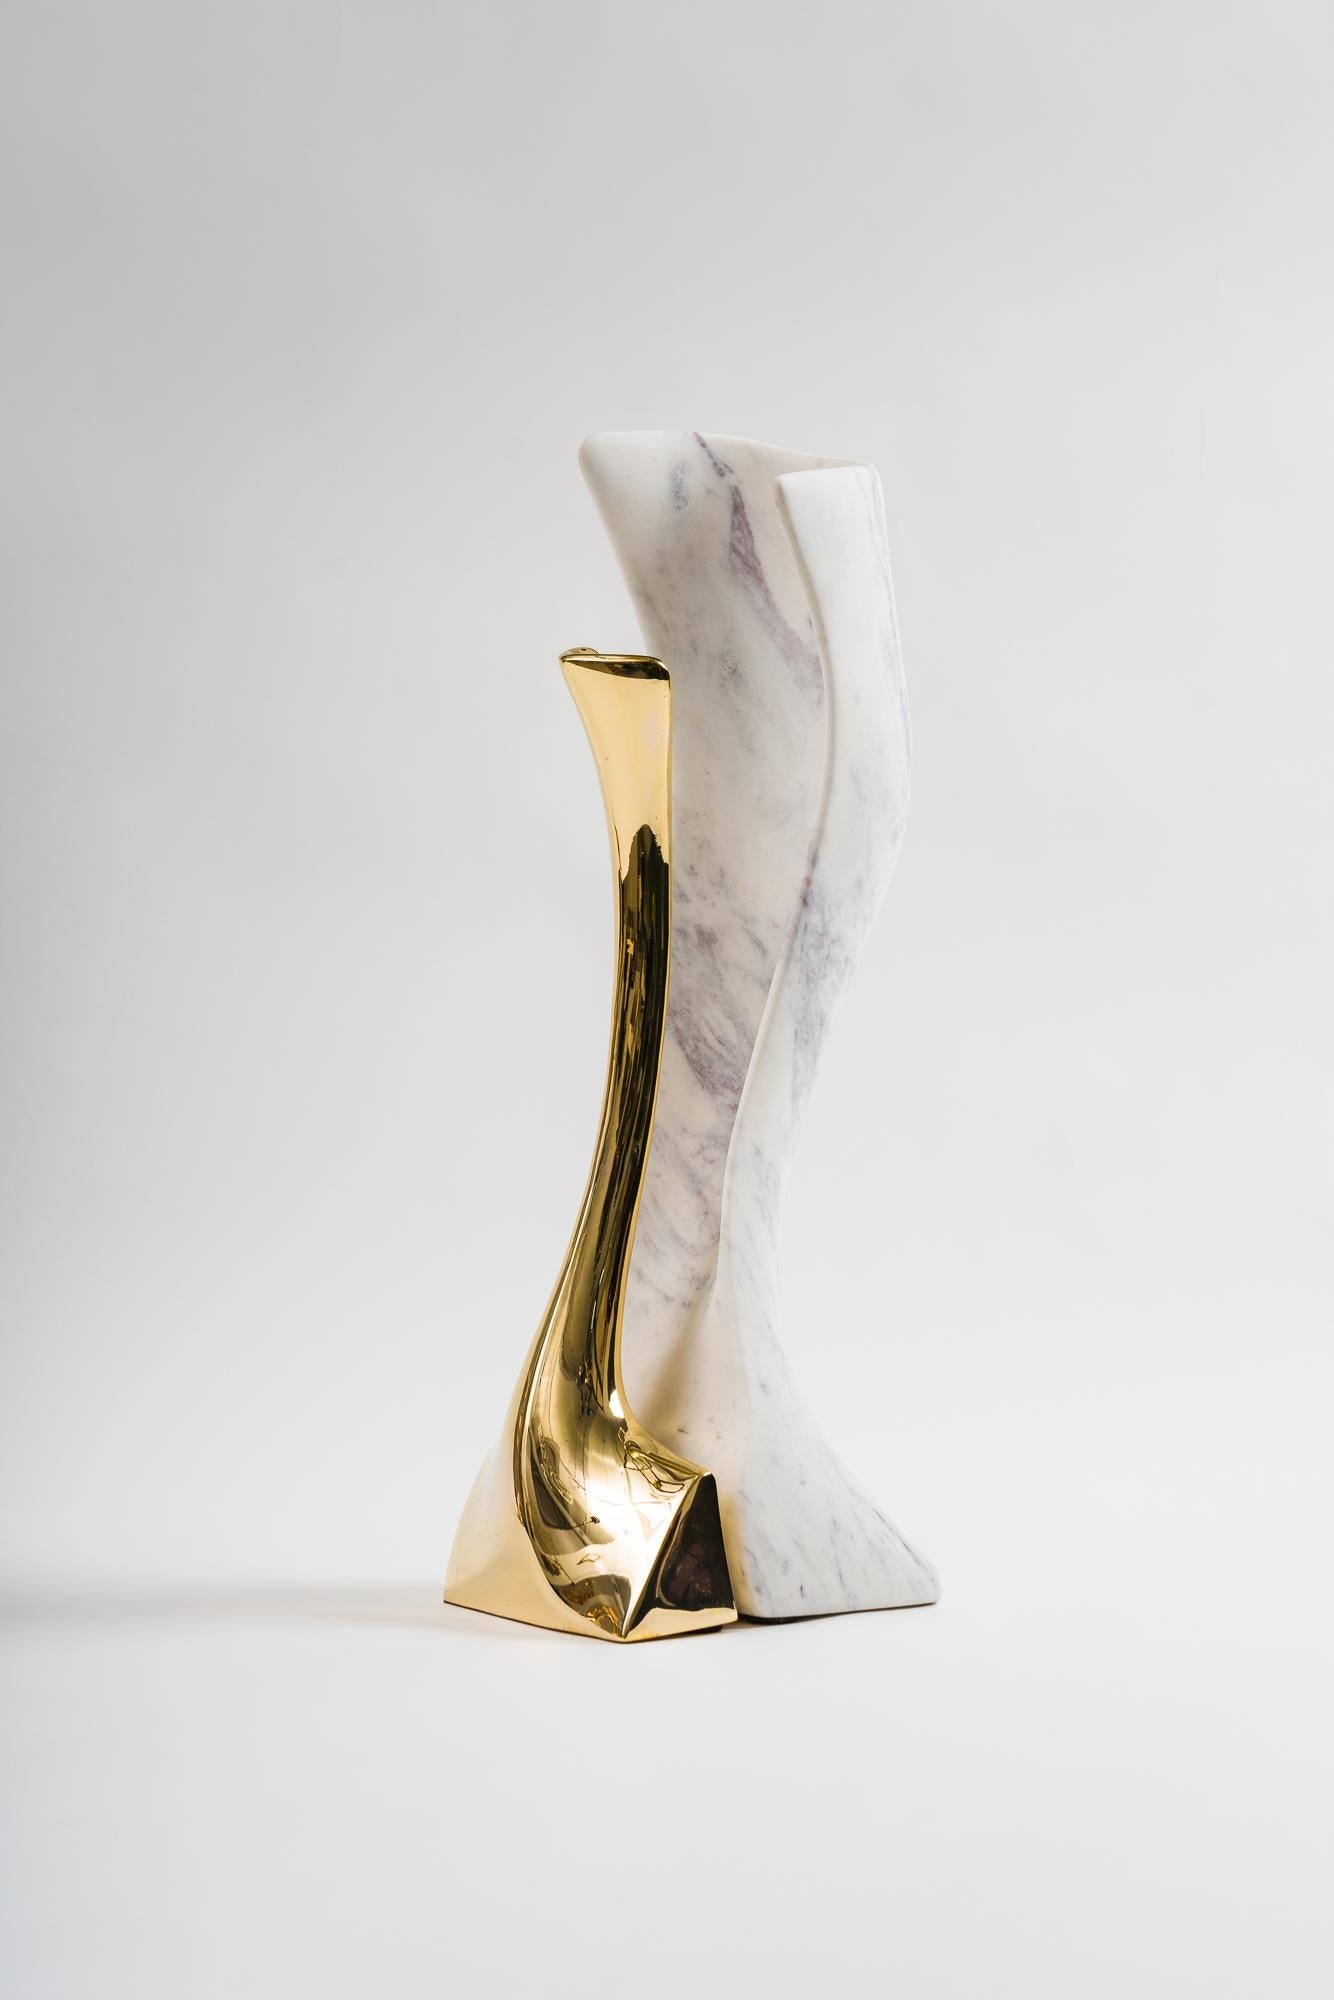 Die skulpturale LED-Lampe von Alex Roskin aus Messing und Marmor hat die gleichen perfekt proportionierten Kurven wie seine einzigartigen Möbelstücke aus Bronze und Stahl. Interne LEDs reflektieren den Marmor und verleihen dem Werk einen warmen